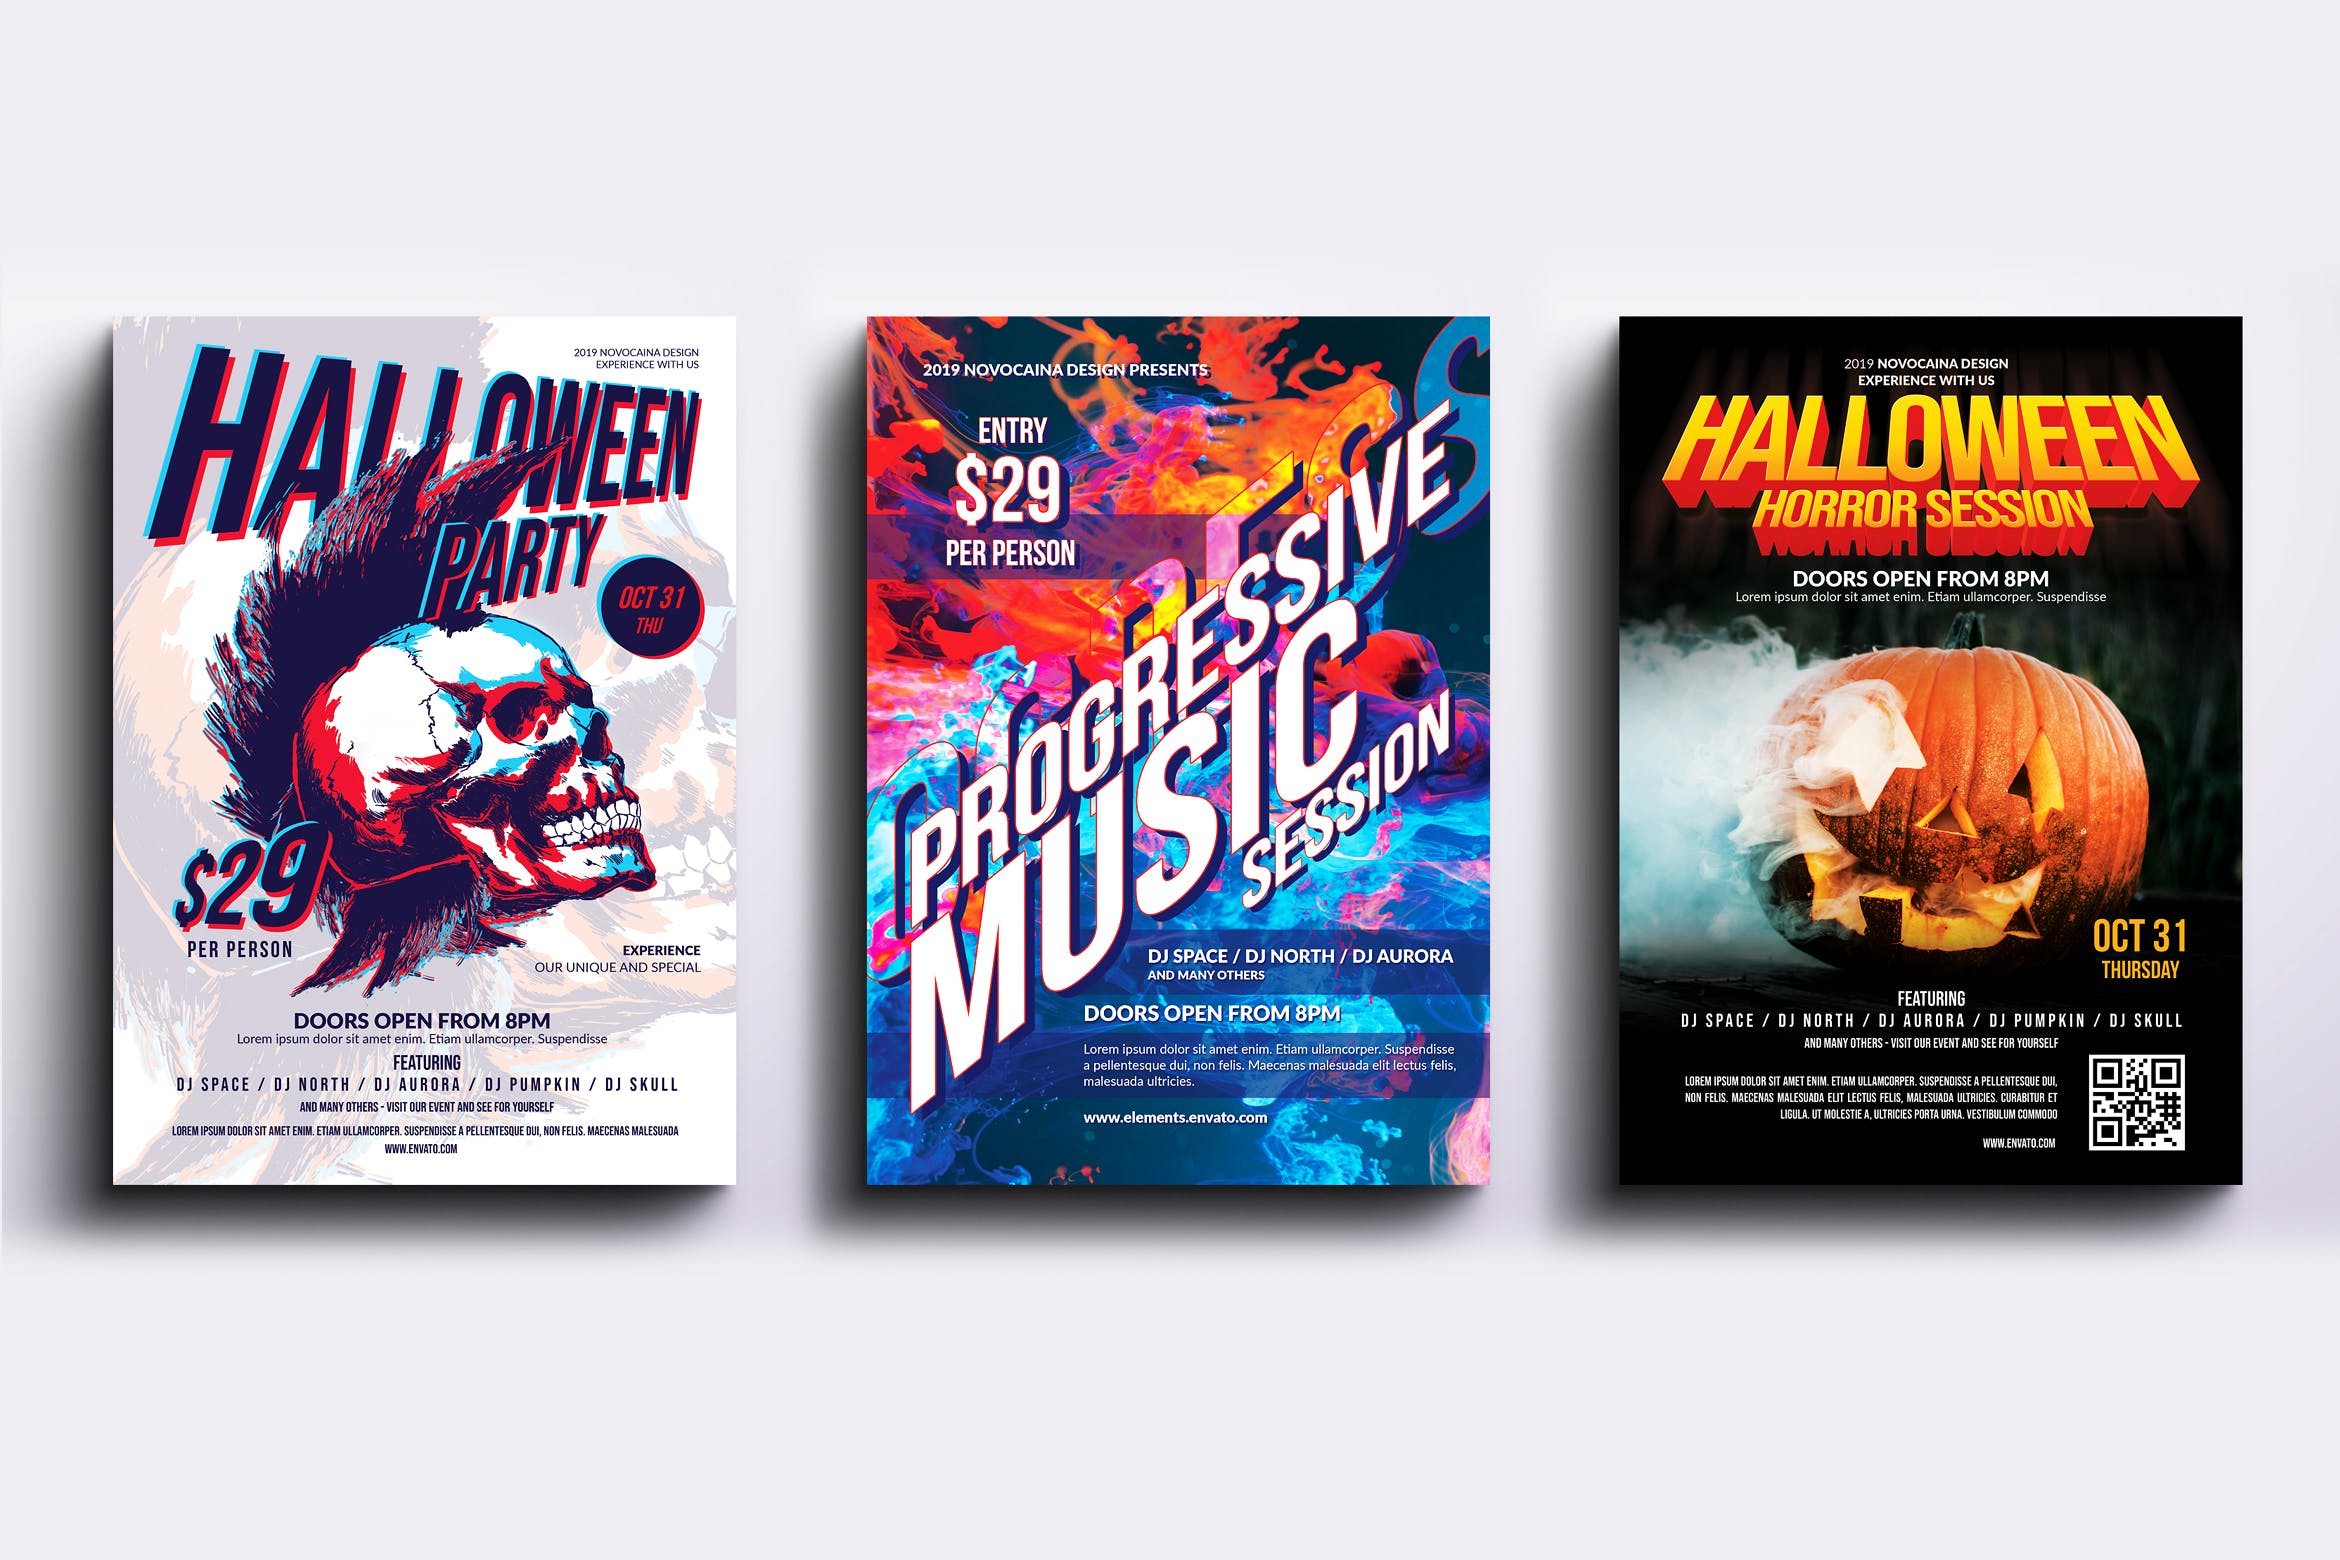 迪斯科音乐舞厅主题活动派对海报PSD素材素材库精选模板合集v4 Event Party Posters & Flyers Bundle V4插图